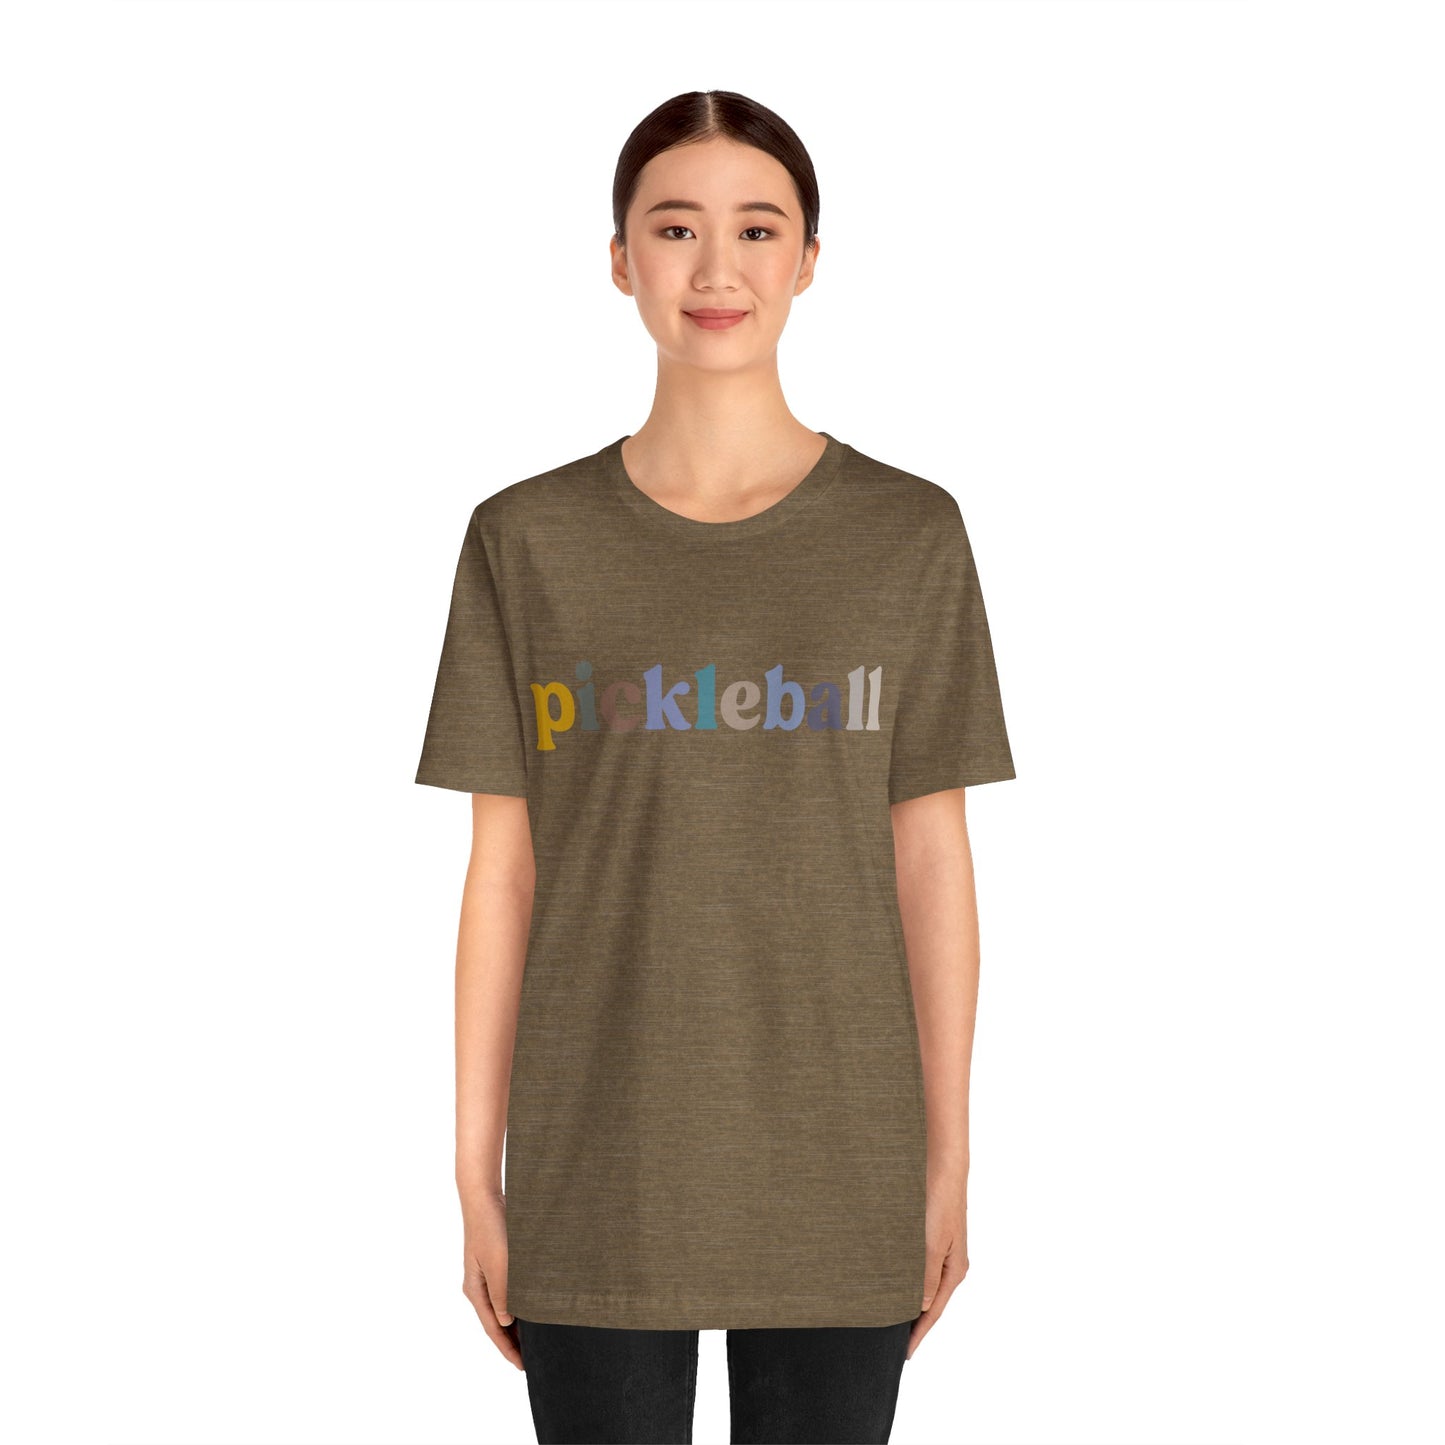 Pickleball Shirt, Cute Pickleball Shirt for Wife, Retro Pickleball Gift for Pickleball Lover, Cute Paddleball T Shirt, T1127